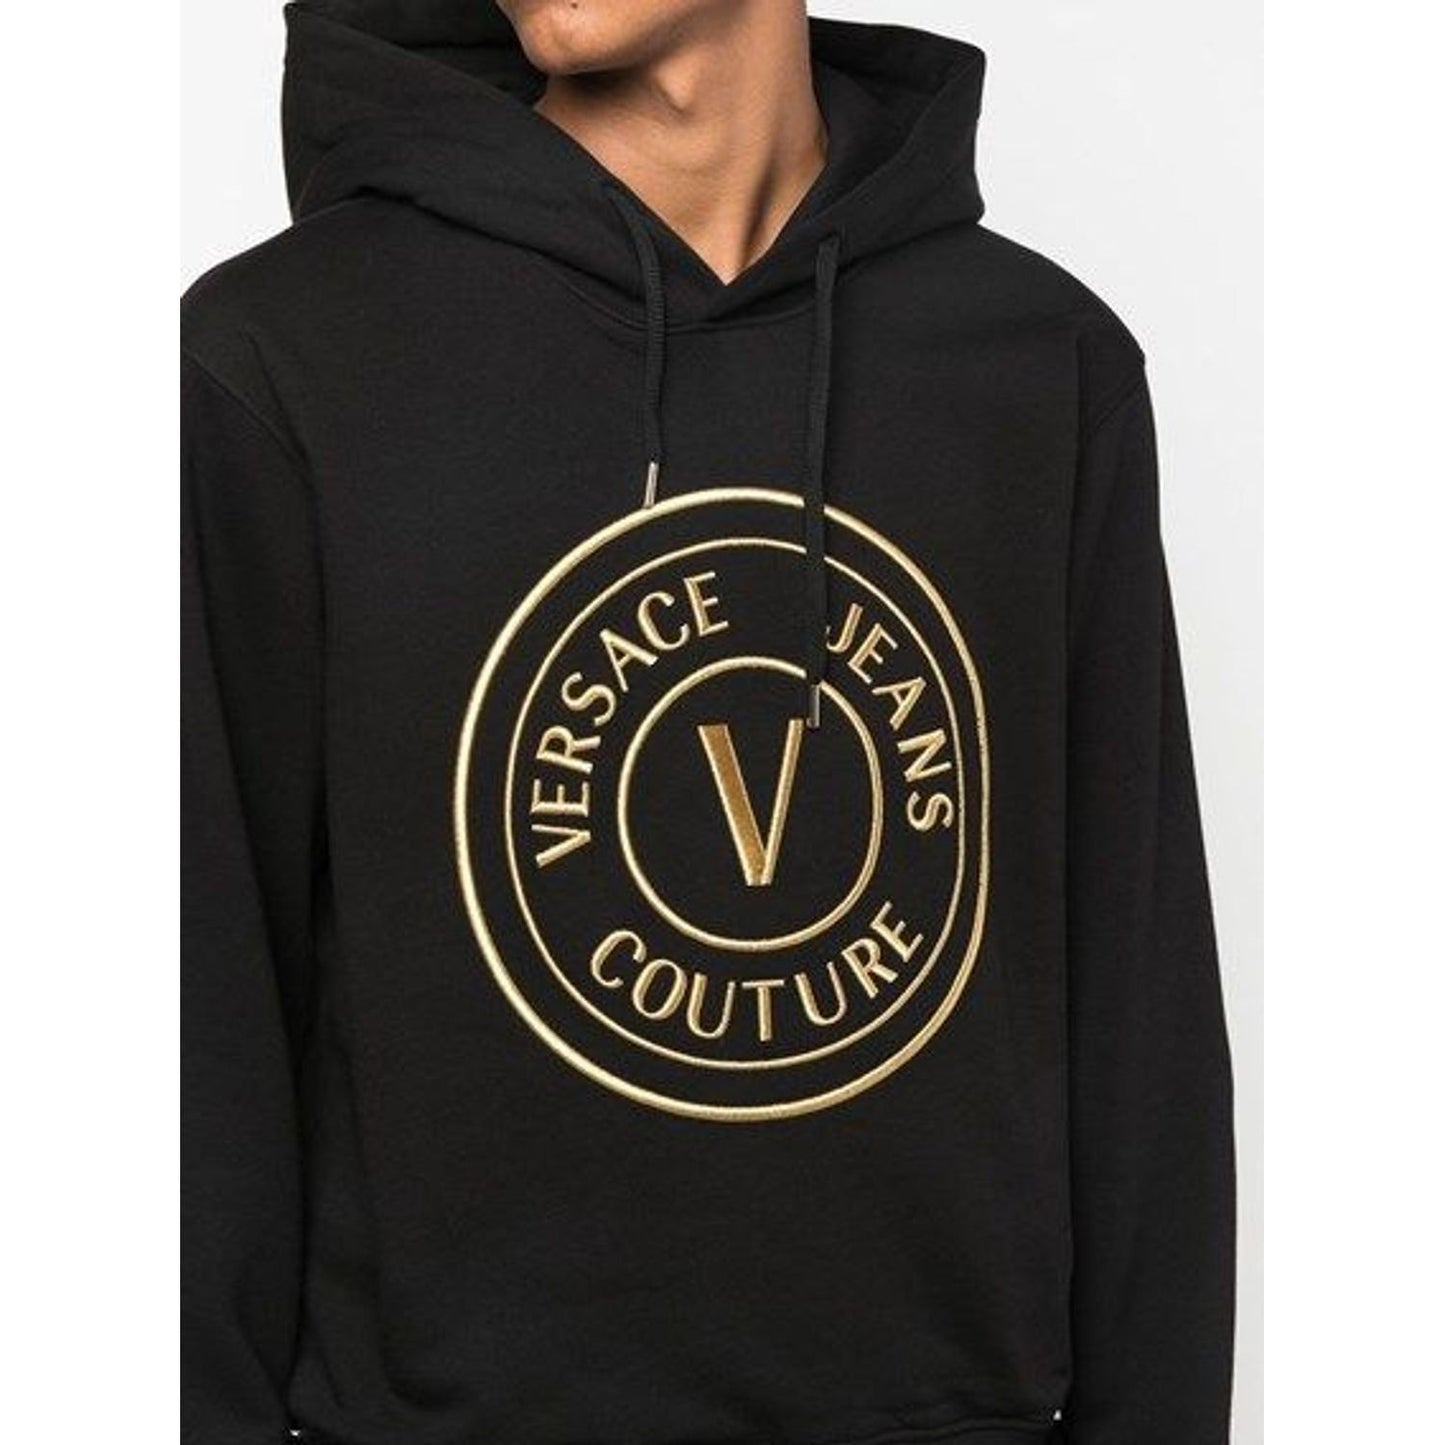 Versace JeansChic Black Hooded SweatshirtMcRichard Designer Brands£339.00